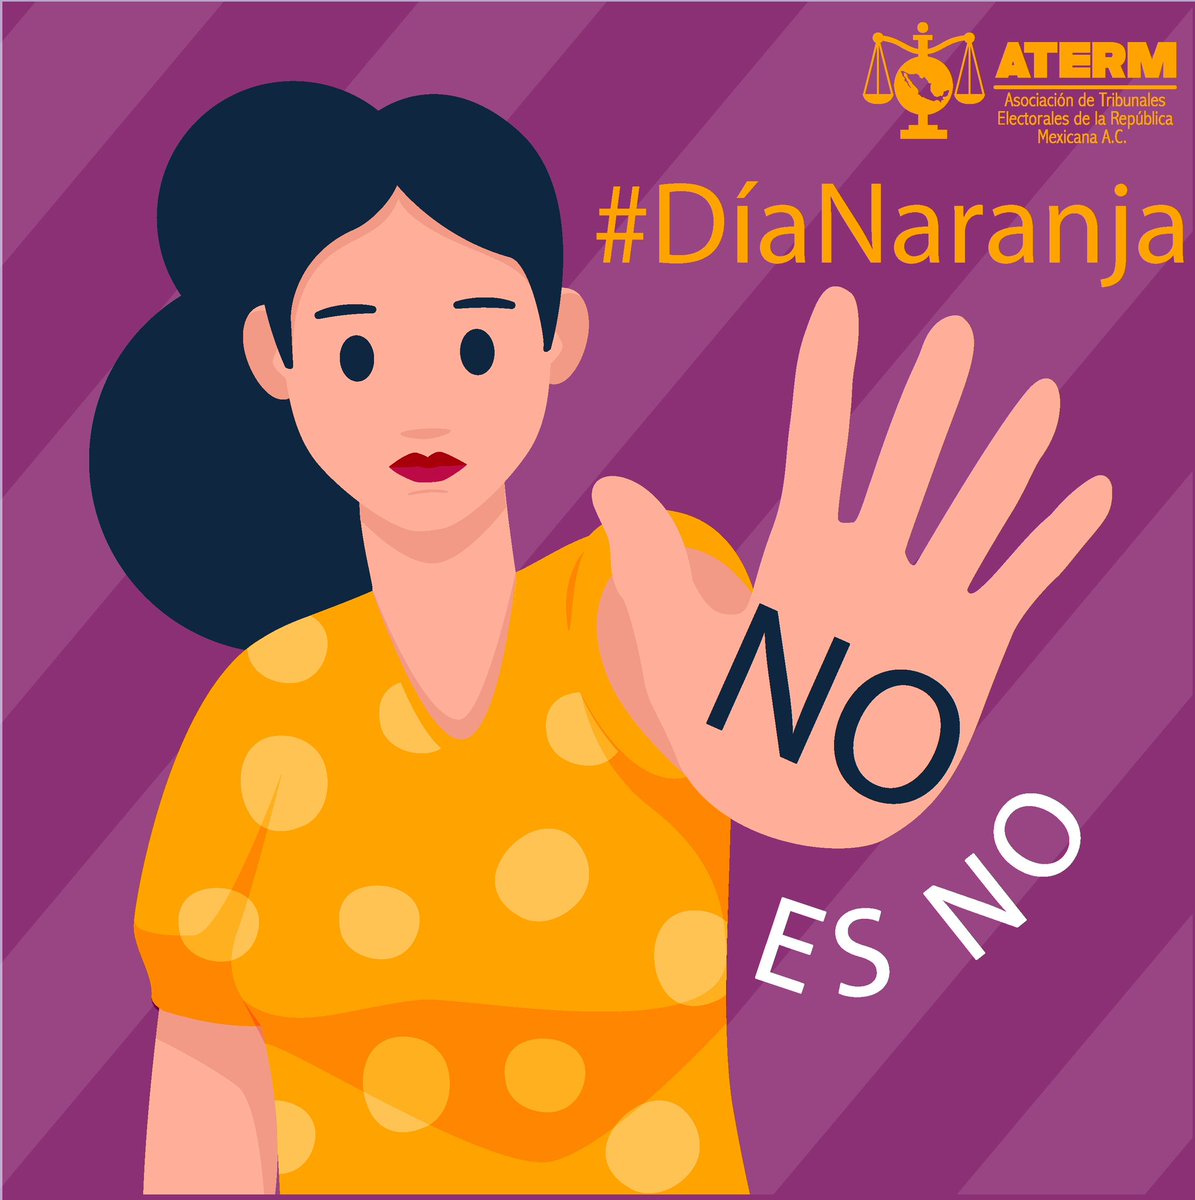 #Únete al #DíaNaranja
 La violencia en contra de #Mujeres y #Niñas no se justifica

#25N
#NoEsNo 

🟠 #OrgulloATERM 
🟠 #SiempreATERM 
🟠 #SomosATERM